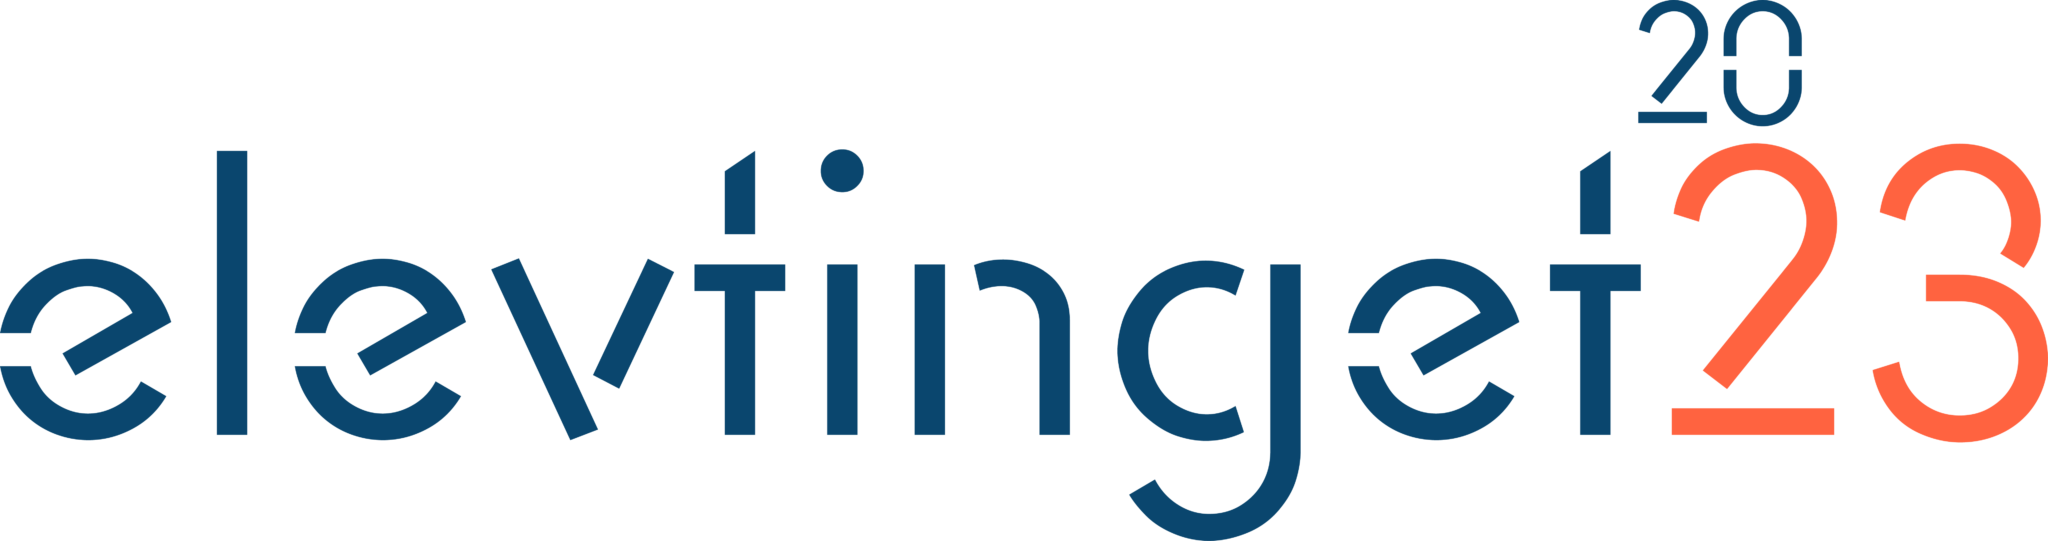 Elevtinget 2023 Logo blårød